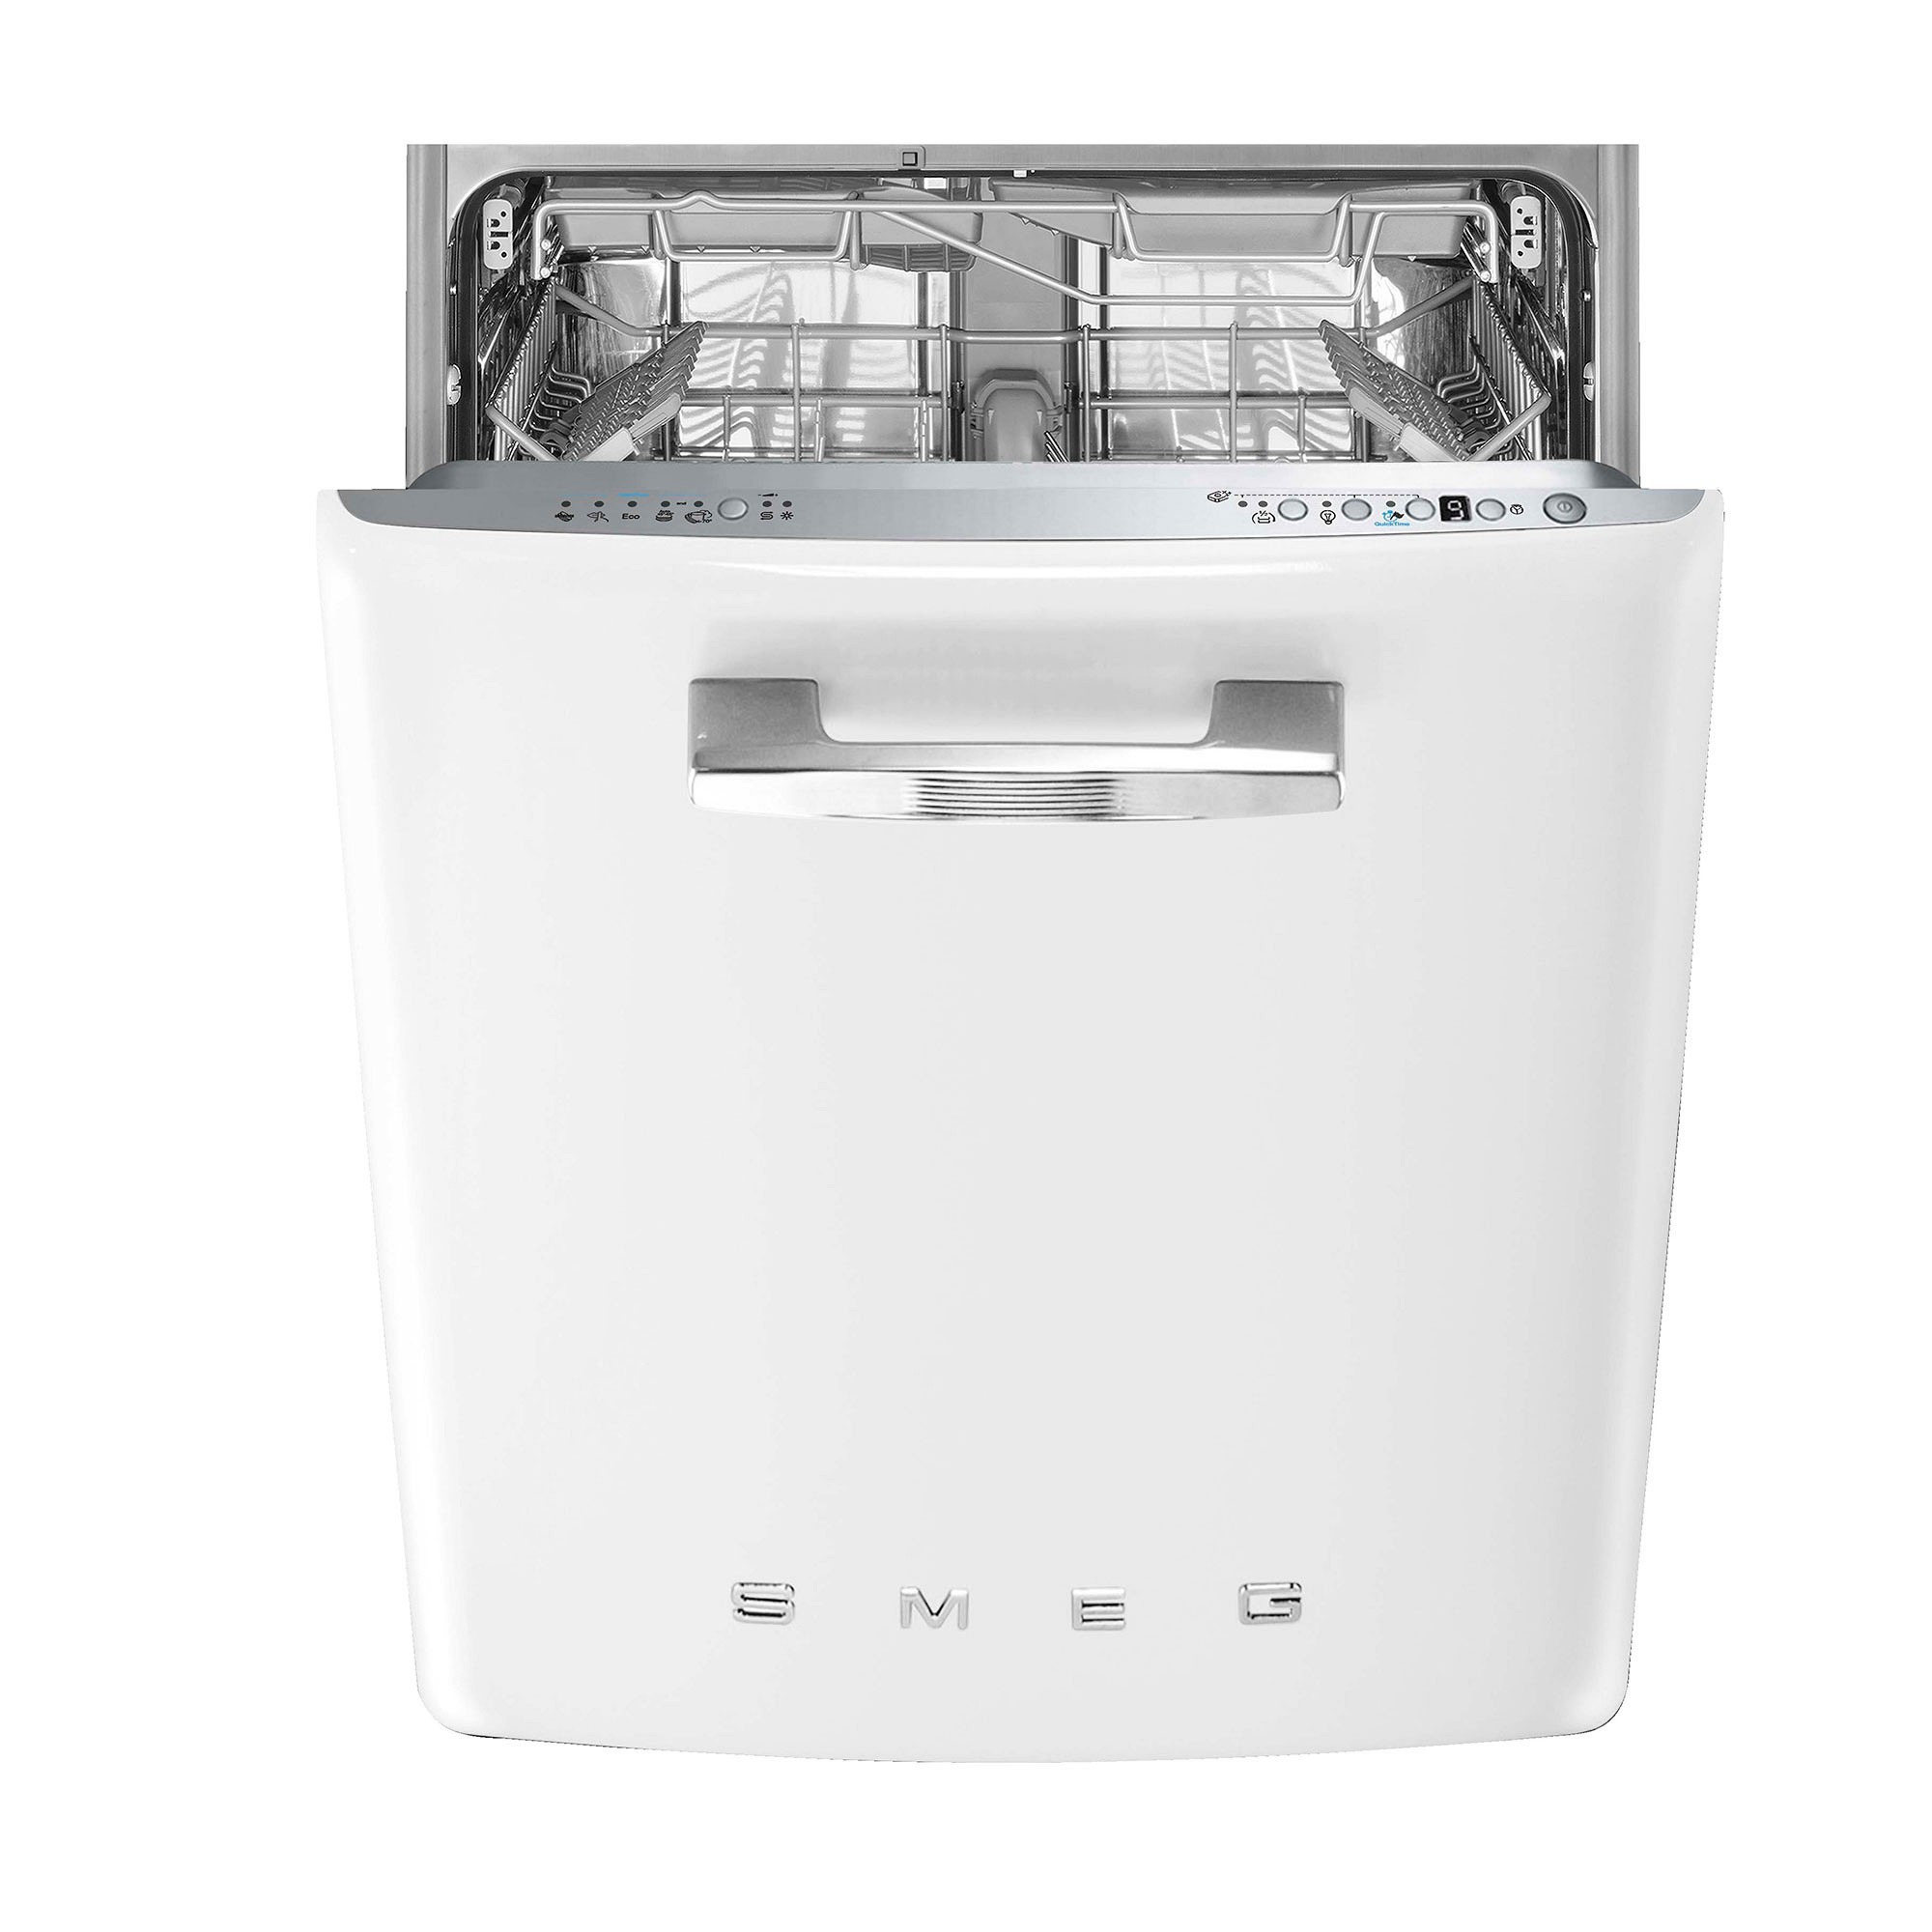 SMEG 24" Retro Dishwasher in White